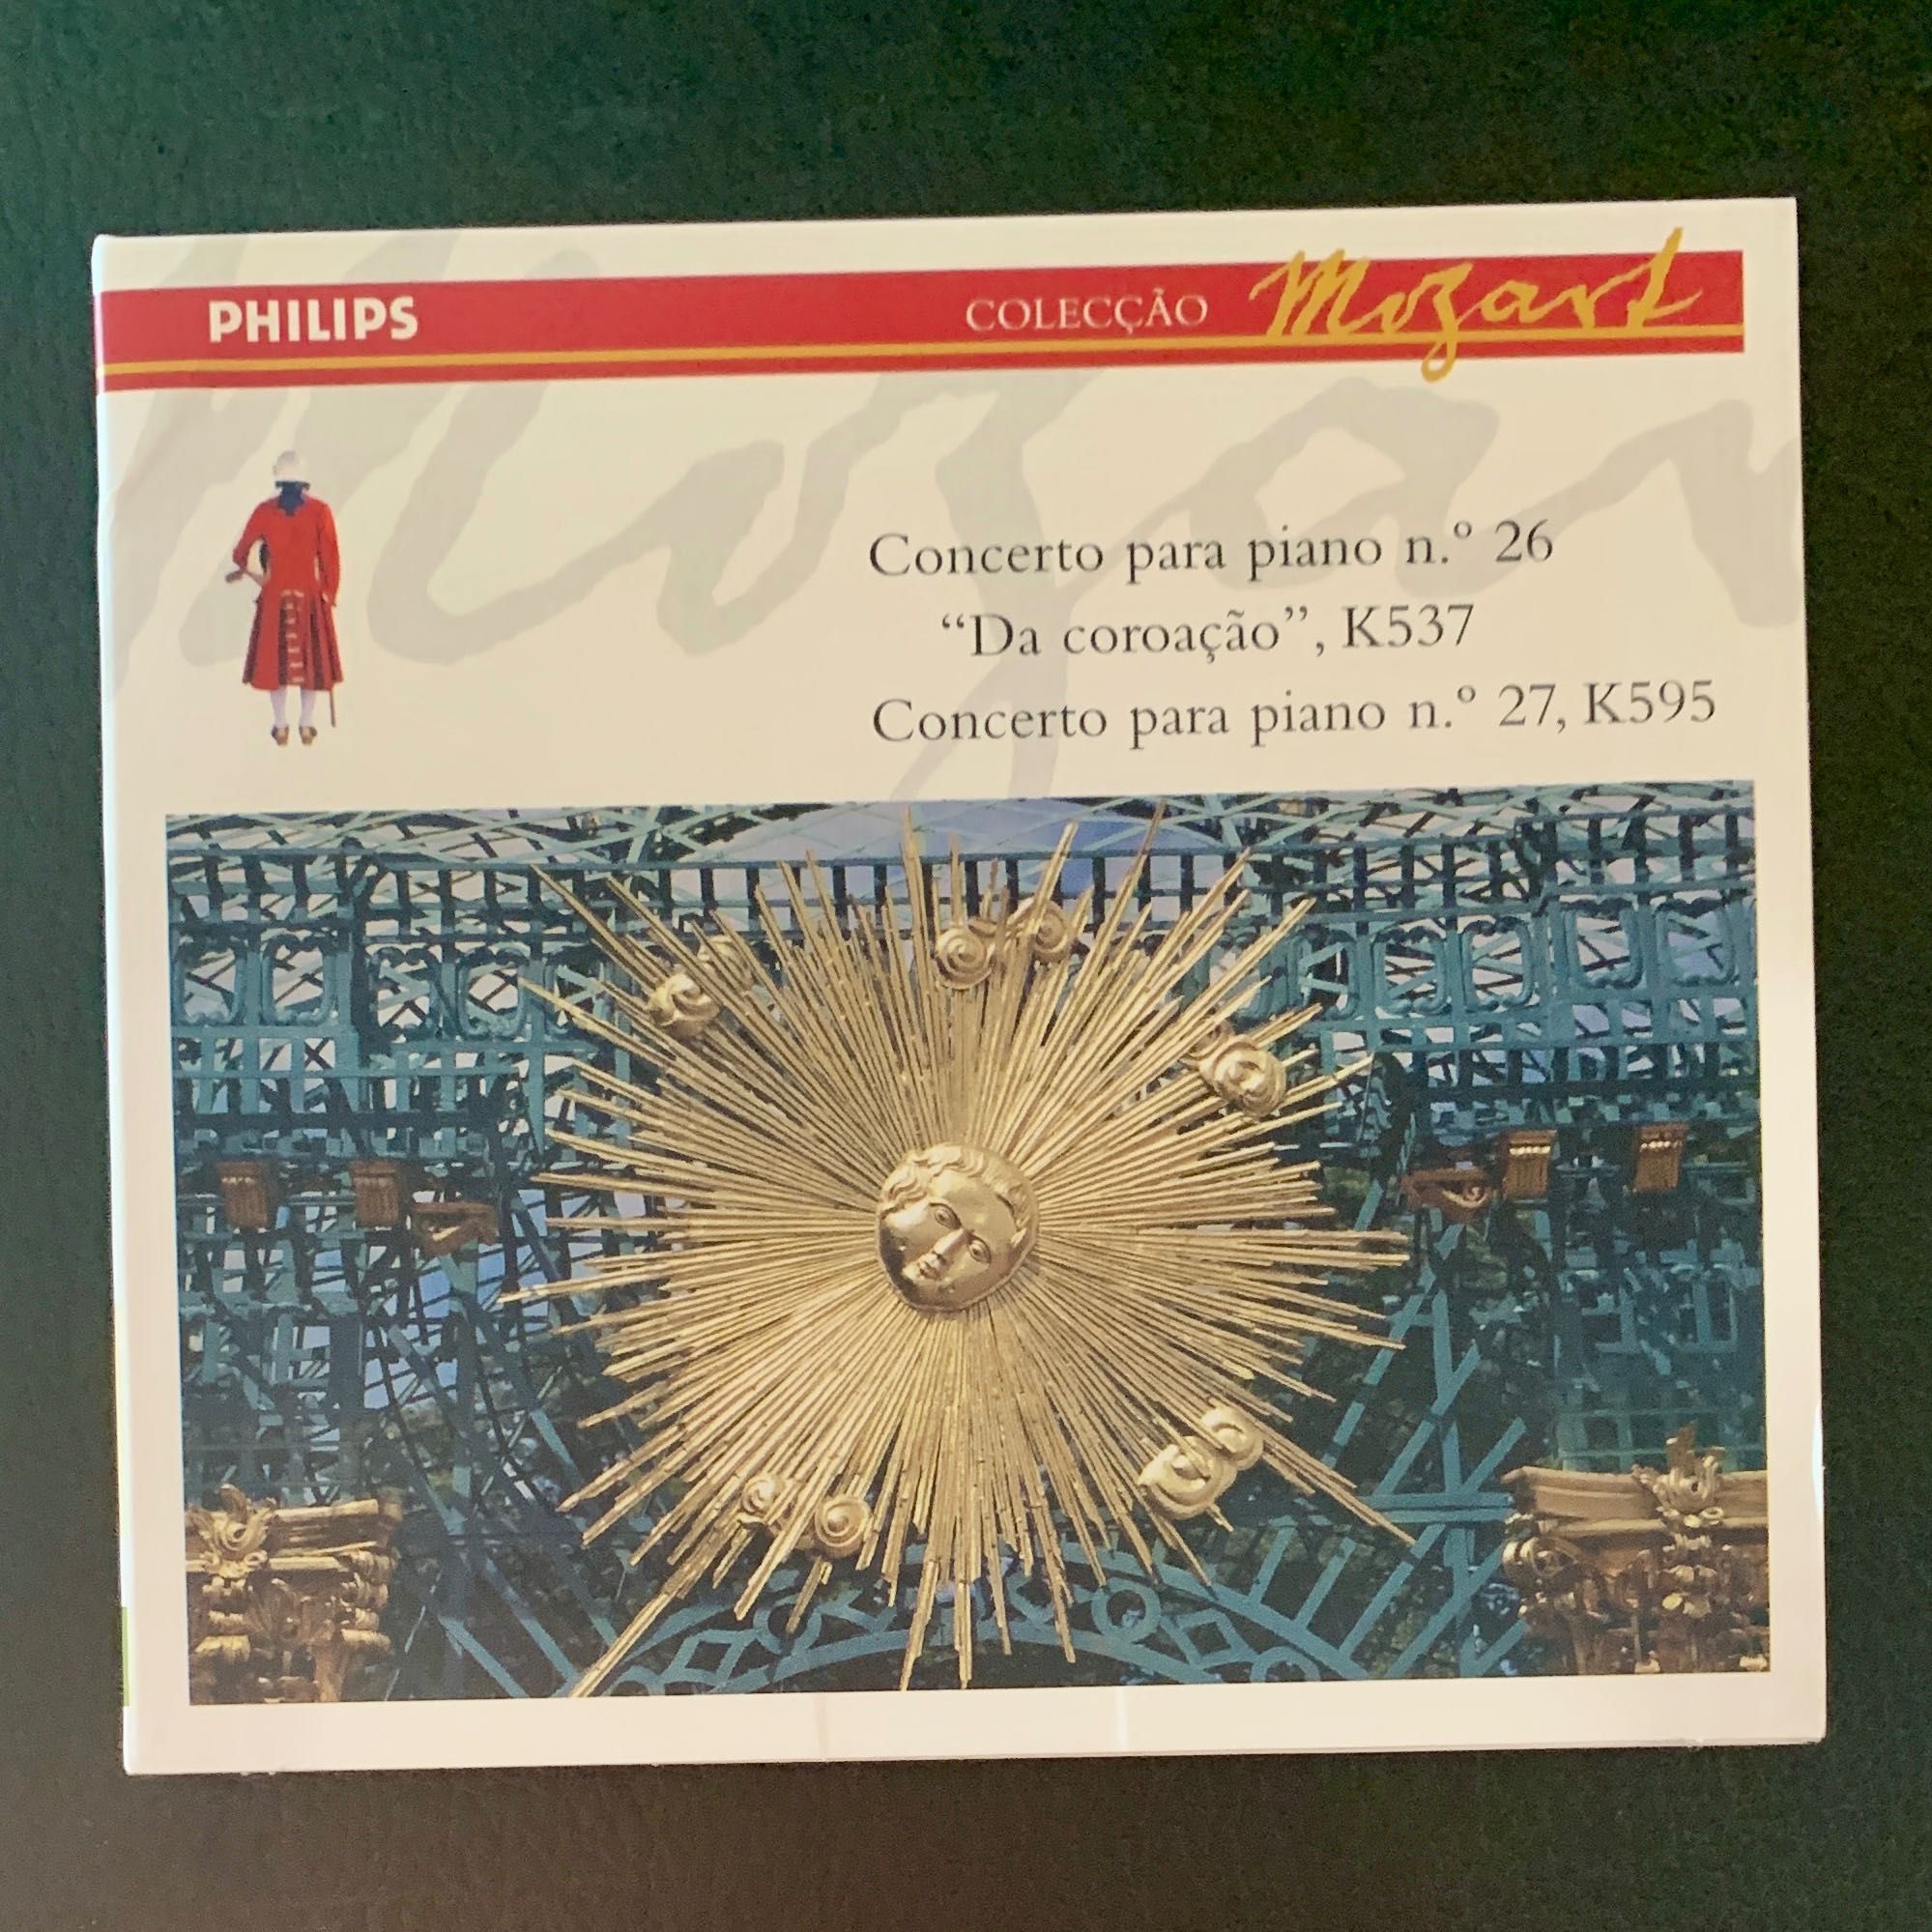 18. CDs clássica: Mozart: sinfonias e concertos (coleção Mozart)